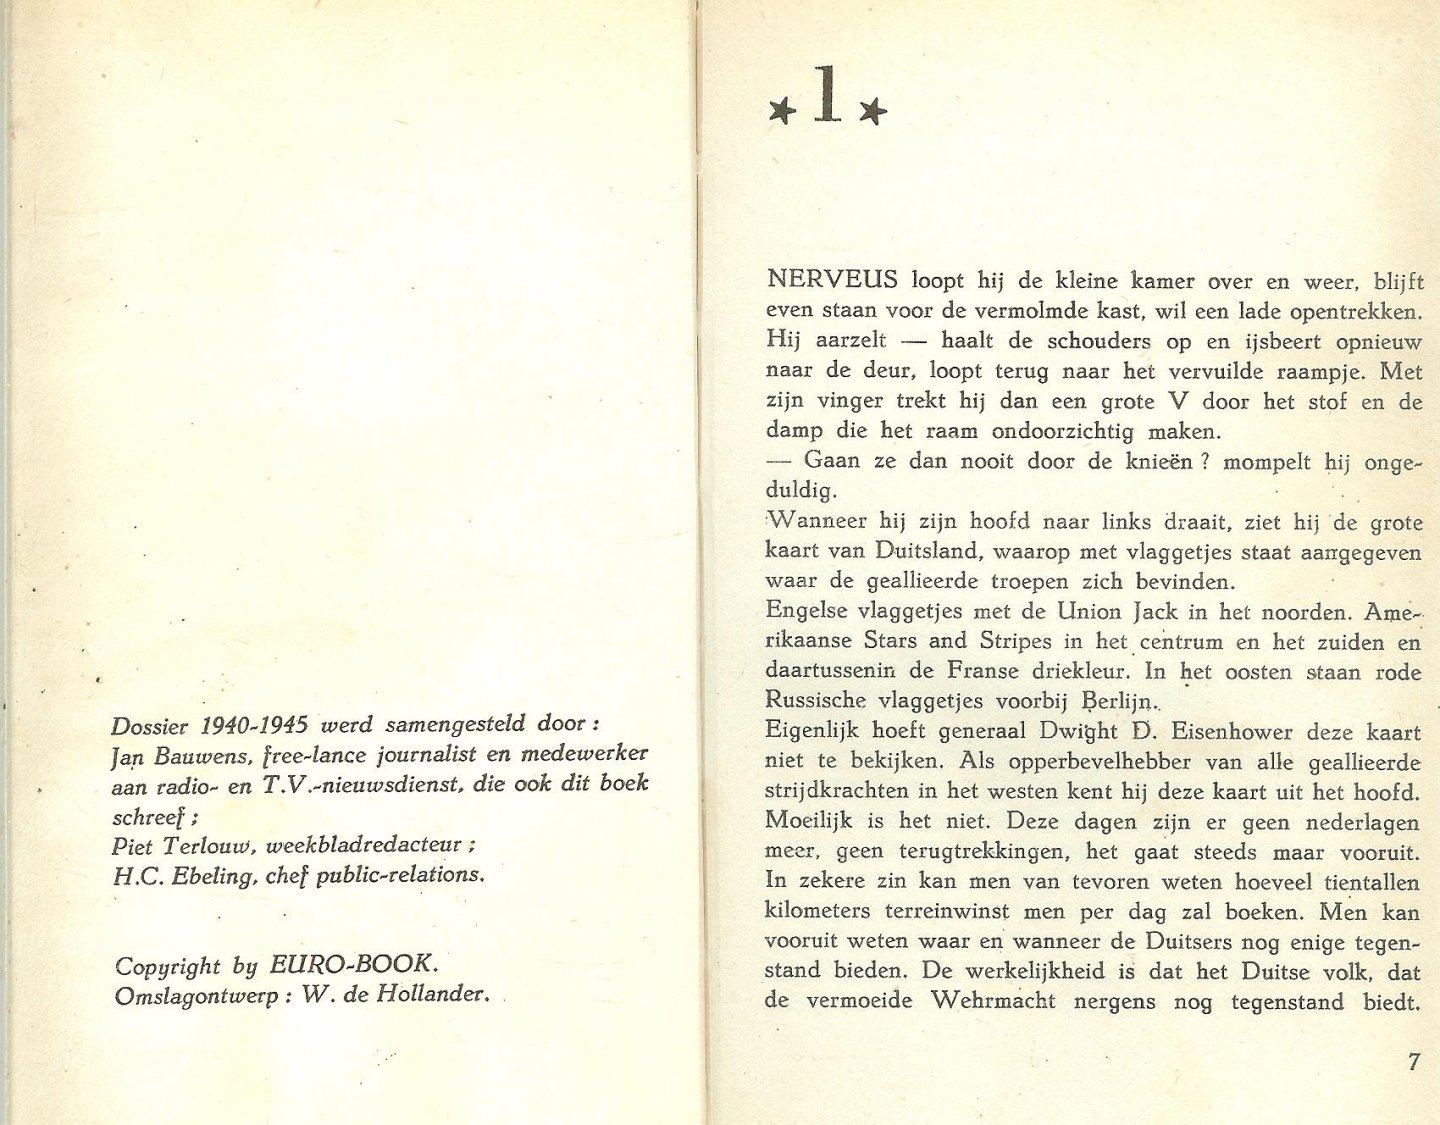 Bauwens, Jan en Piet  Terlouw, Piet  Weekbladredacteur  H.C.  Ebeling, Chef publicrelations - Eisenhower de opperbevelhebber. Dossier 1940-1945.